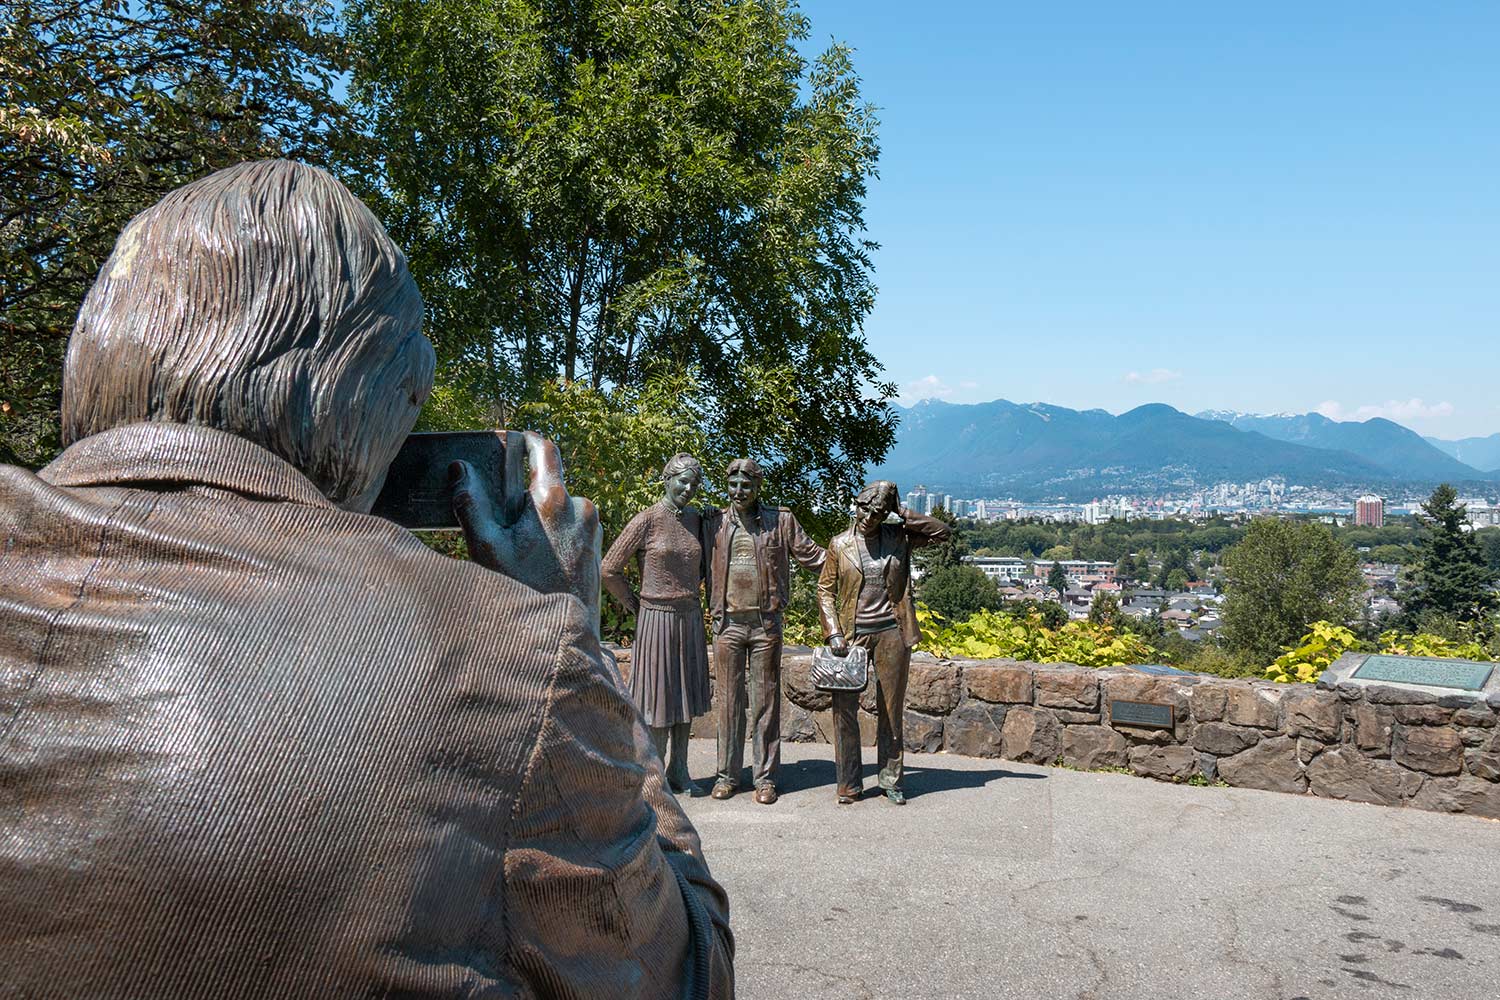 Statue la séance photo, Parc Reine Elizabeth, Vancouver, Colombie-Britannique, Canada / Photo Session Statue, Queen Elizabeth Park, Vancouver, BC, Canada